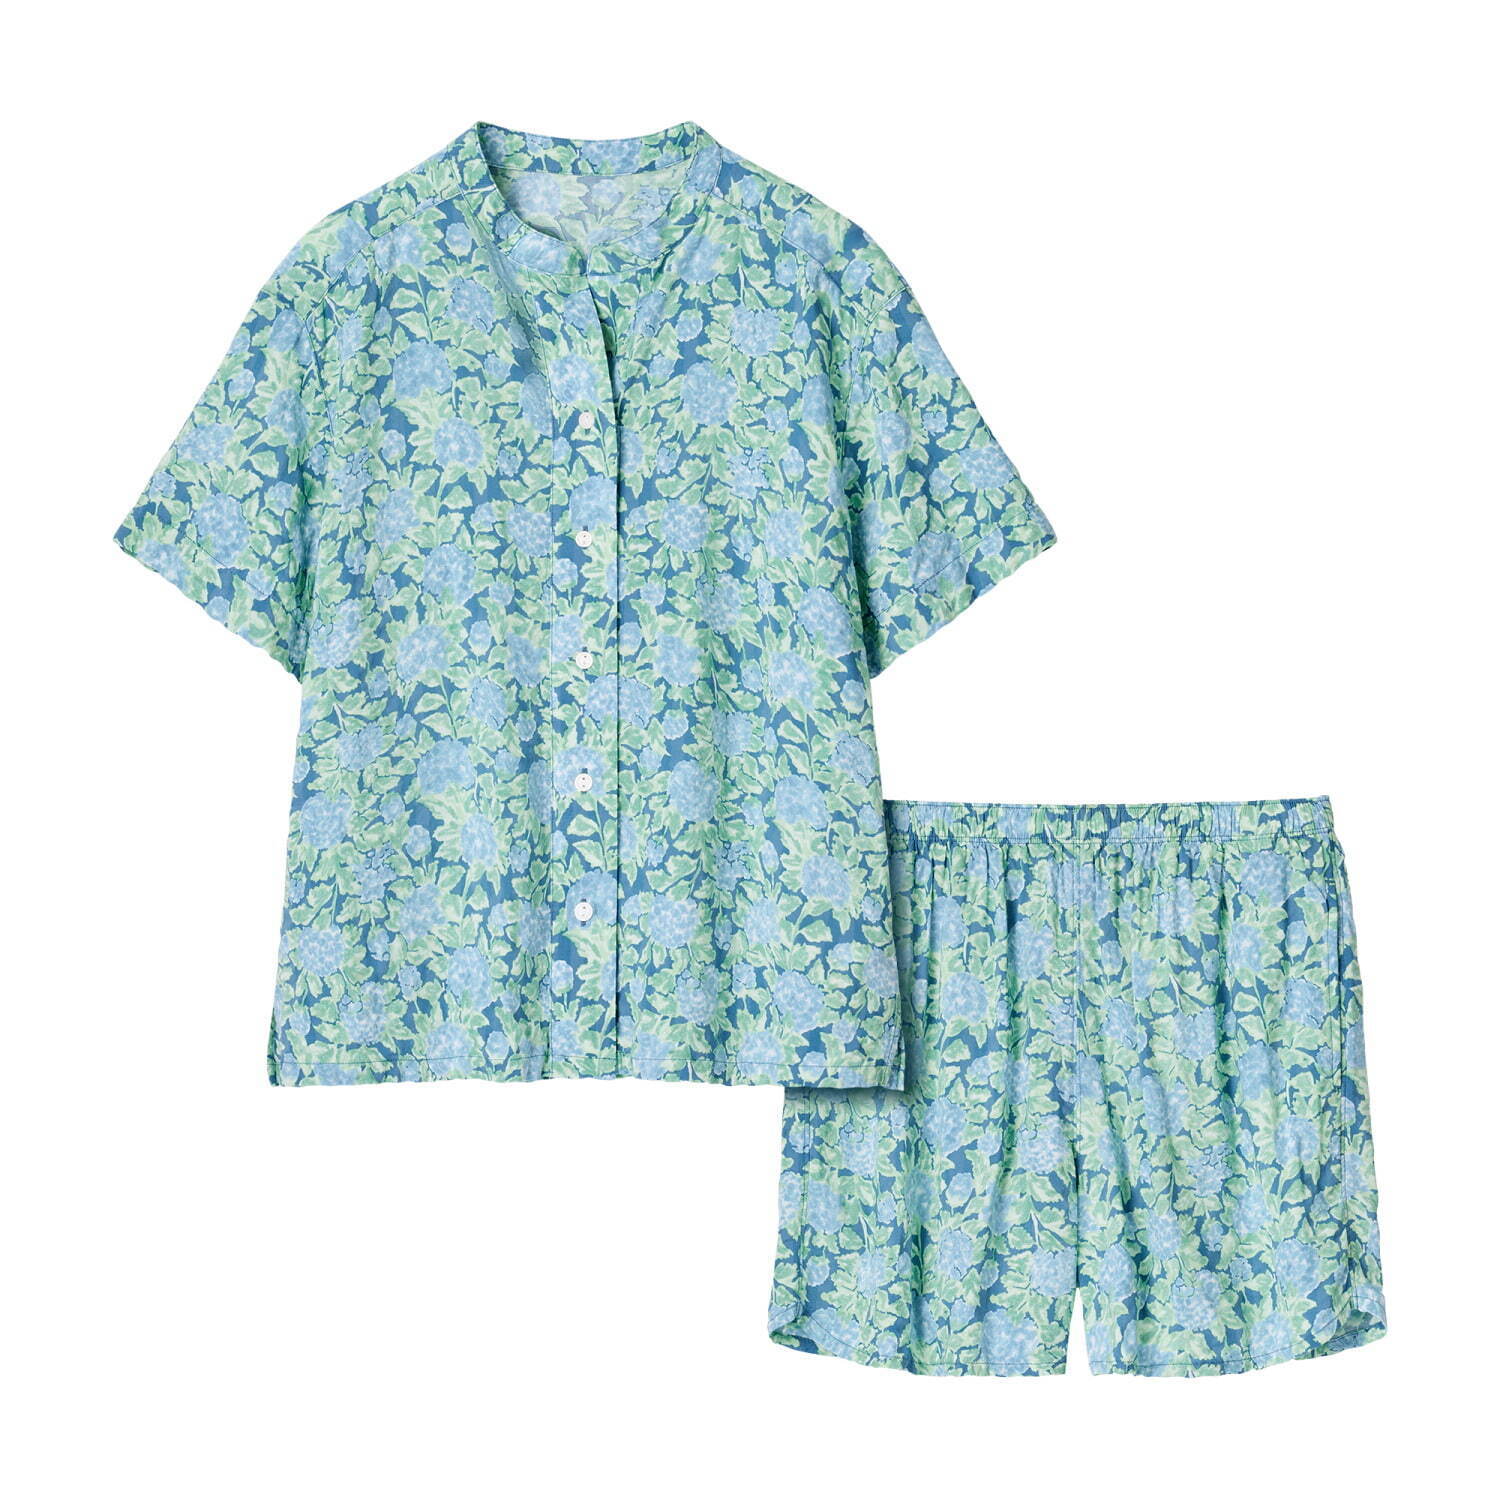 パジャマ(半袖) 2,990円